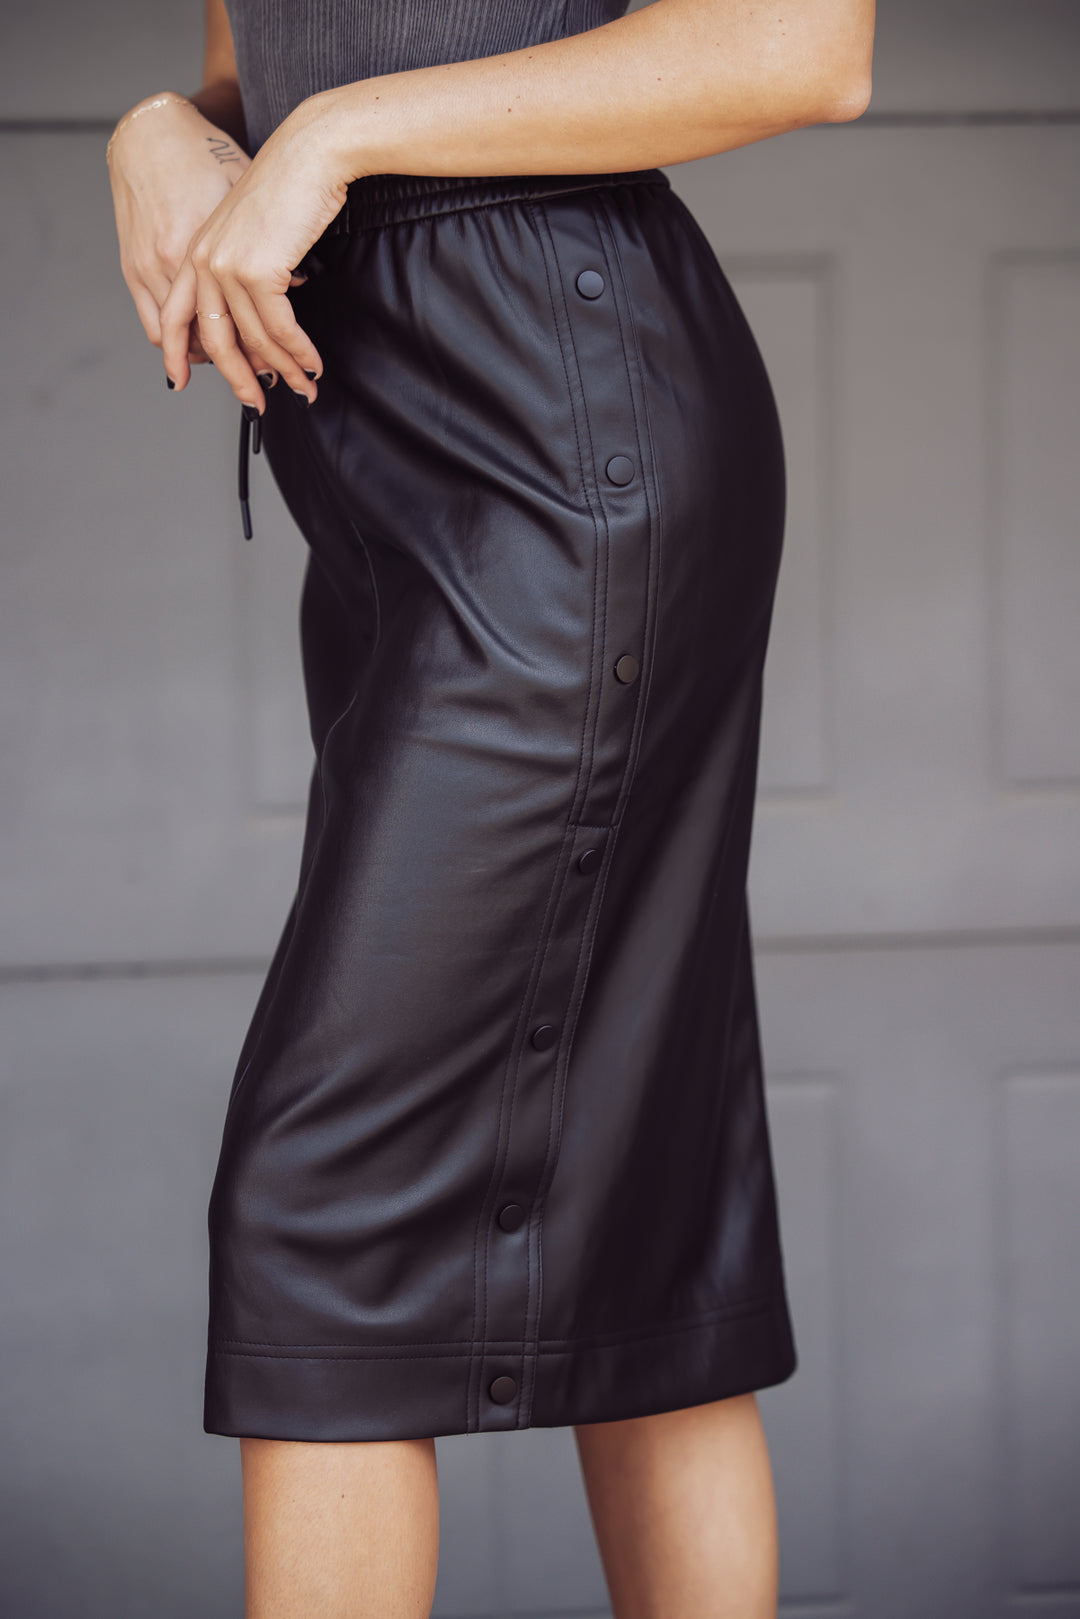 Steve Madden Carla Faux Leather Midi Skirt - Black